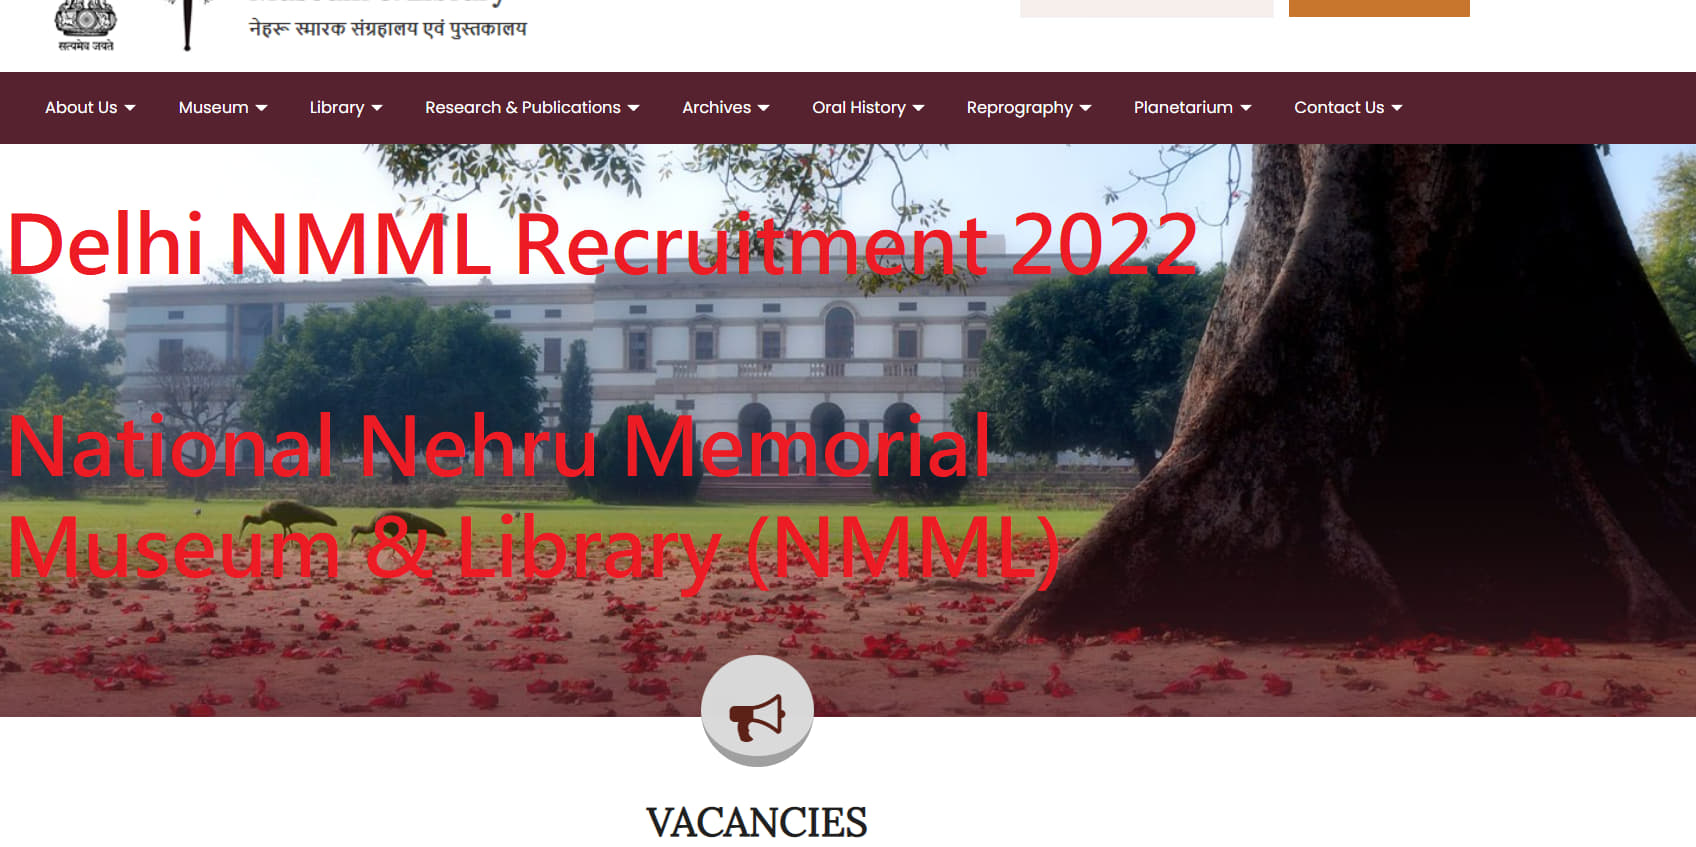 Delhi NMML Recruitment 2022